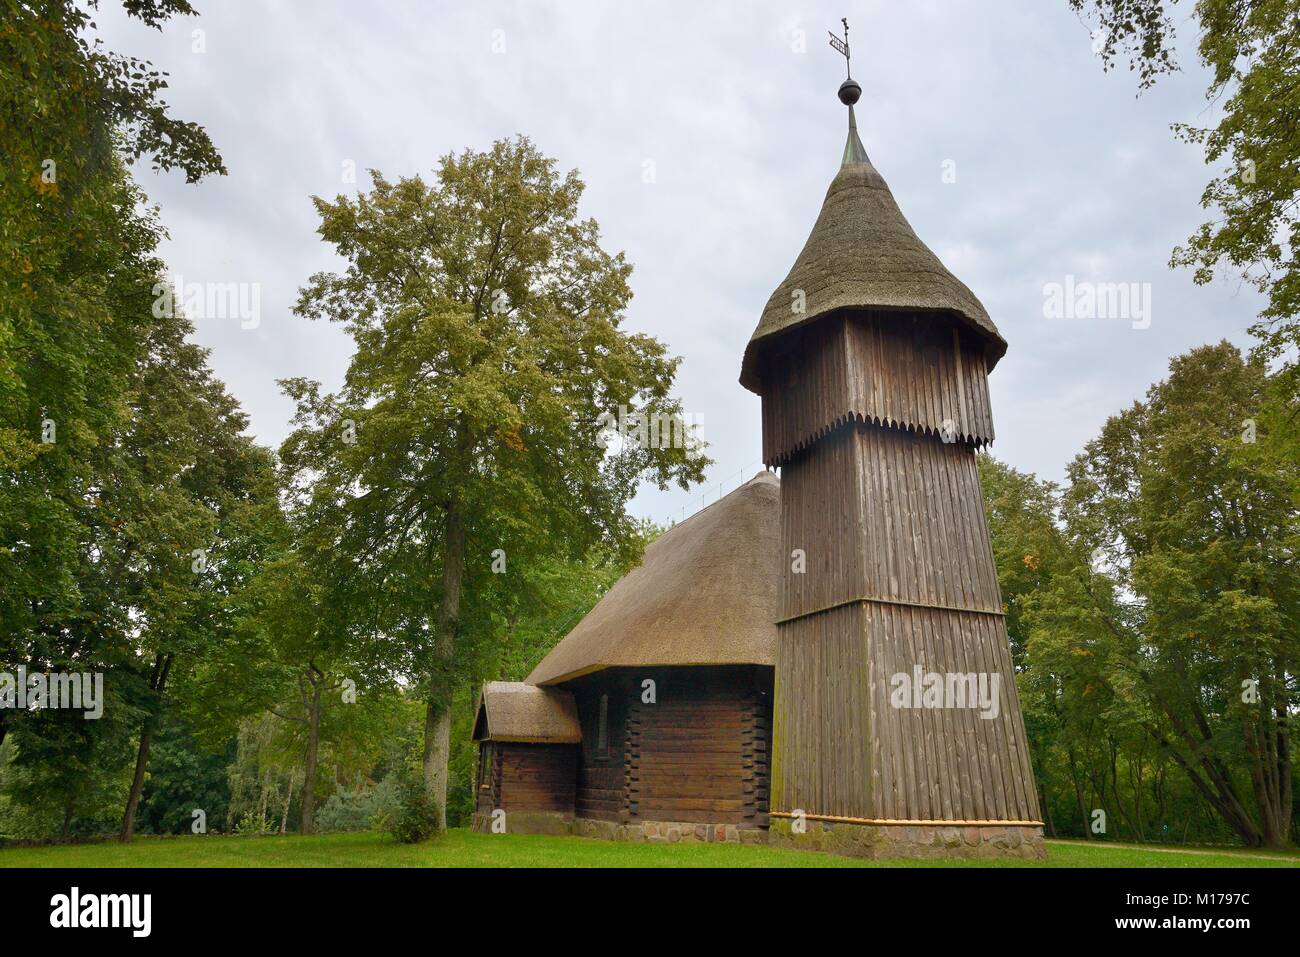 Alte hölzerne Kirche und Glockenturm mit Strohdächern aus Masuren, nun innerhalb der ethnographische Park, Olsztynek, Polen, September 2017. Stockfoto